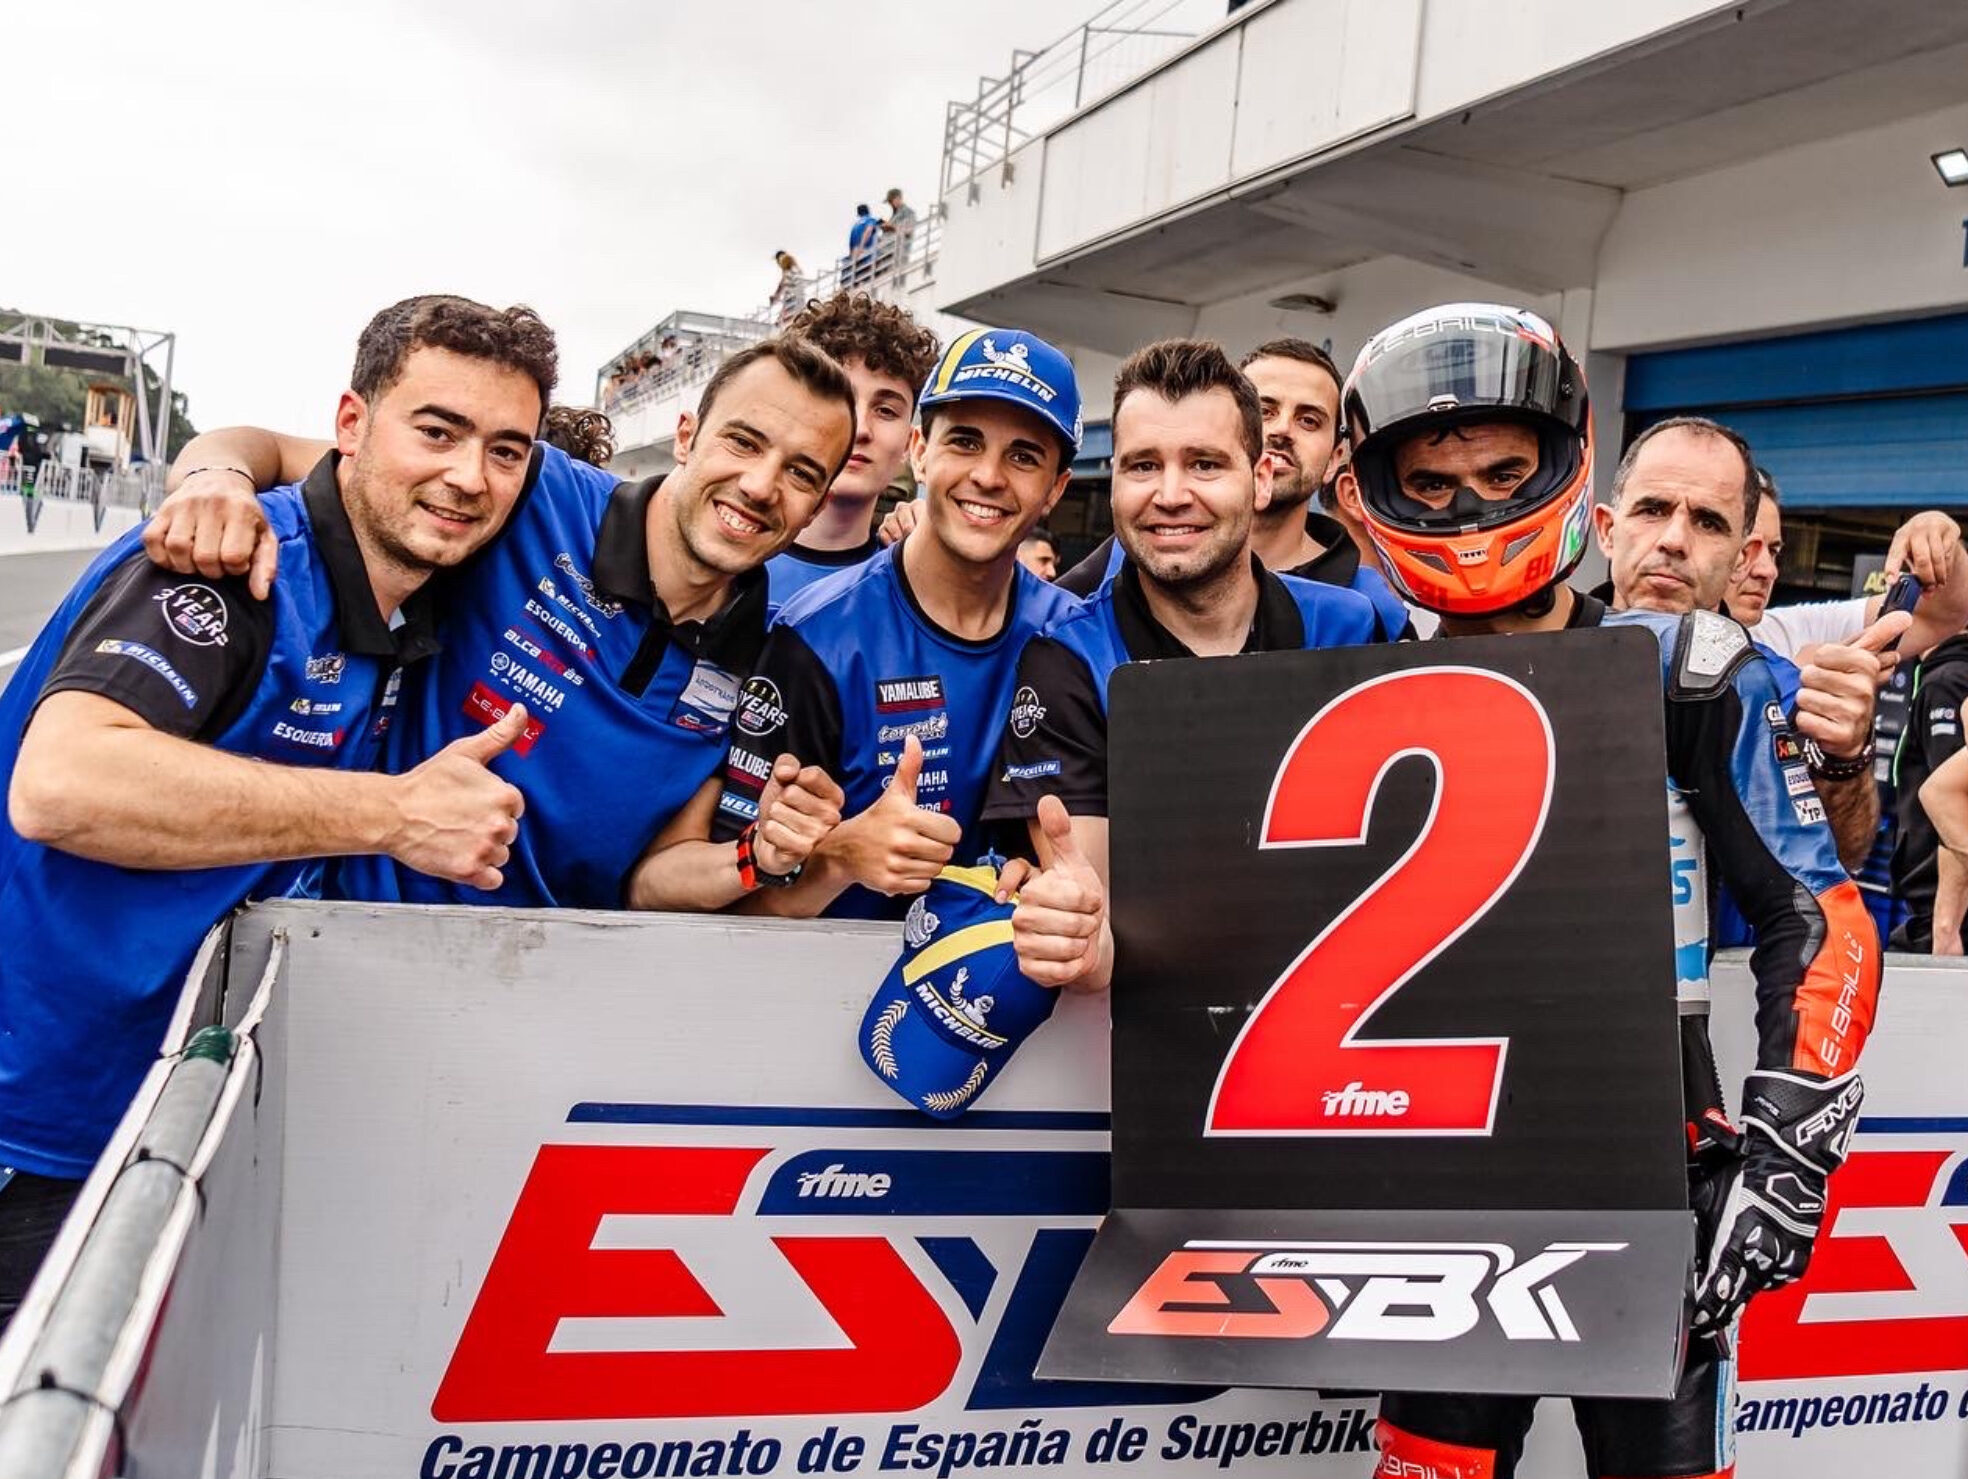 Campeonato de España de Superbikes